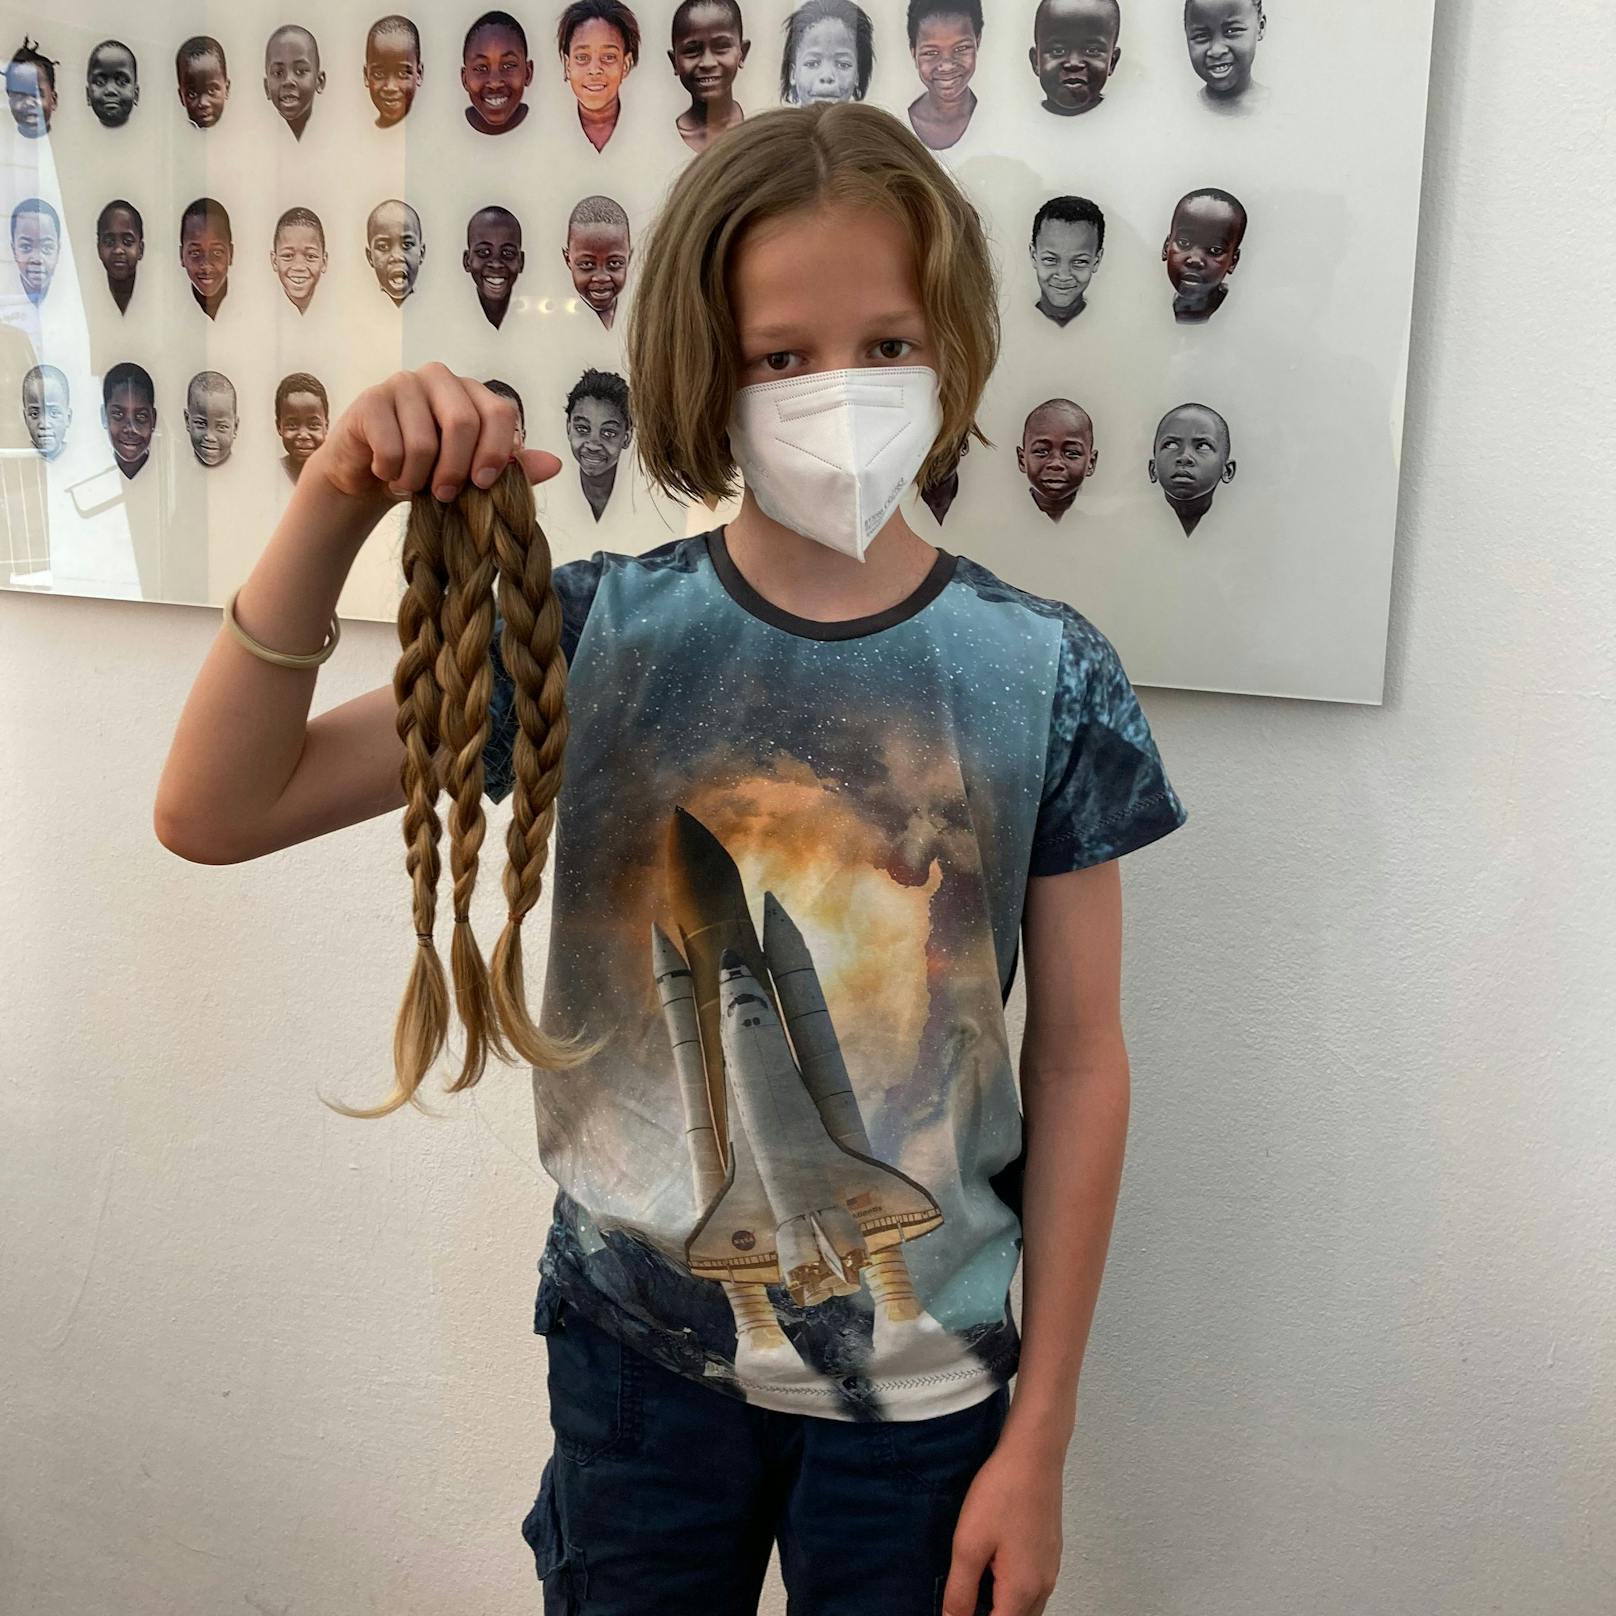 Der 11-jährige Florin spendete seine fast 40 cm lange Haarpracht an den Verein "Haarfee", damit ein krankes Kind eine Echthaarperücke bekommen kann.